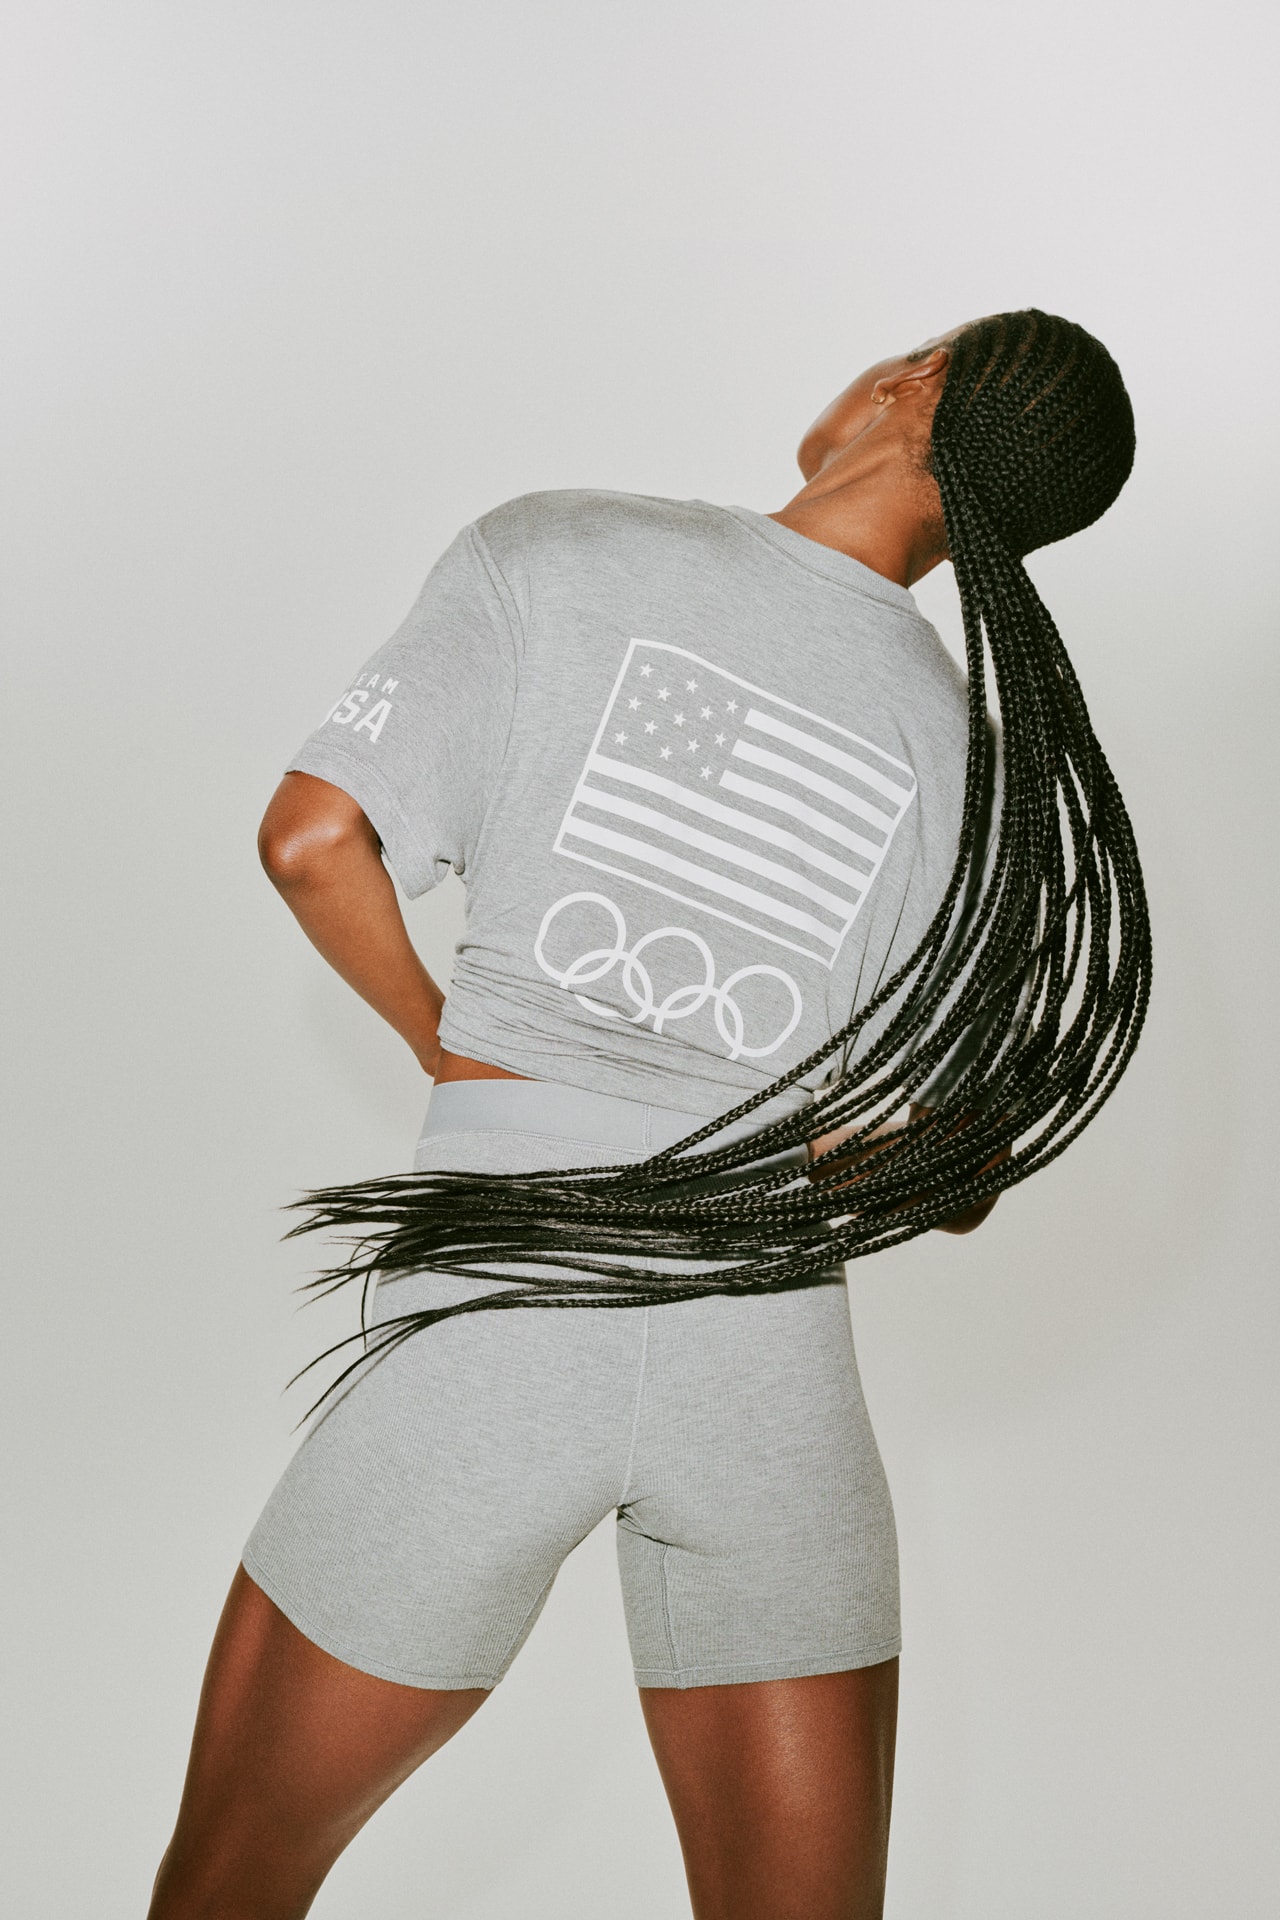 キム・カーダシアン スキムスがアメリカ代表ための公式アンダーウェアコレクションを発売 SKIMS x Team USA Collaboration Kim Kardashian West 2021 Tokyo Olympics